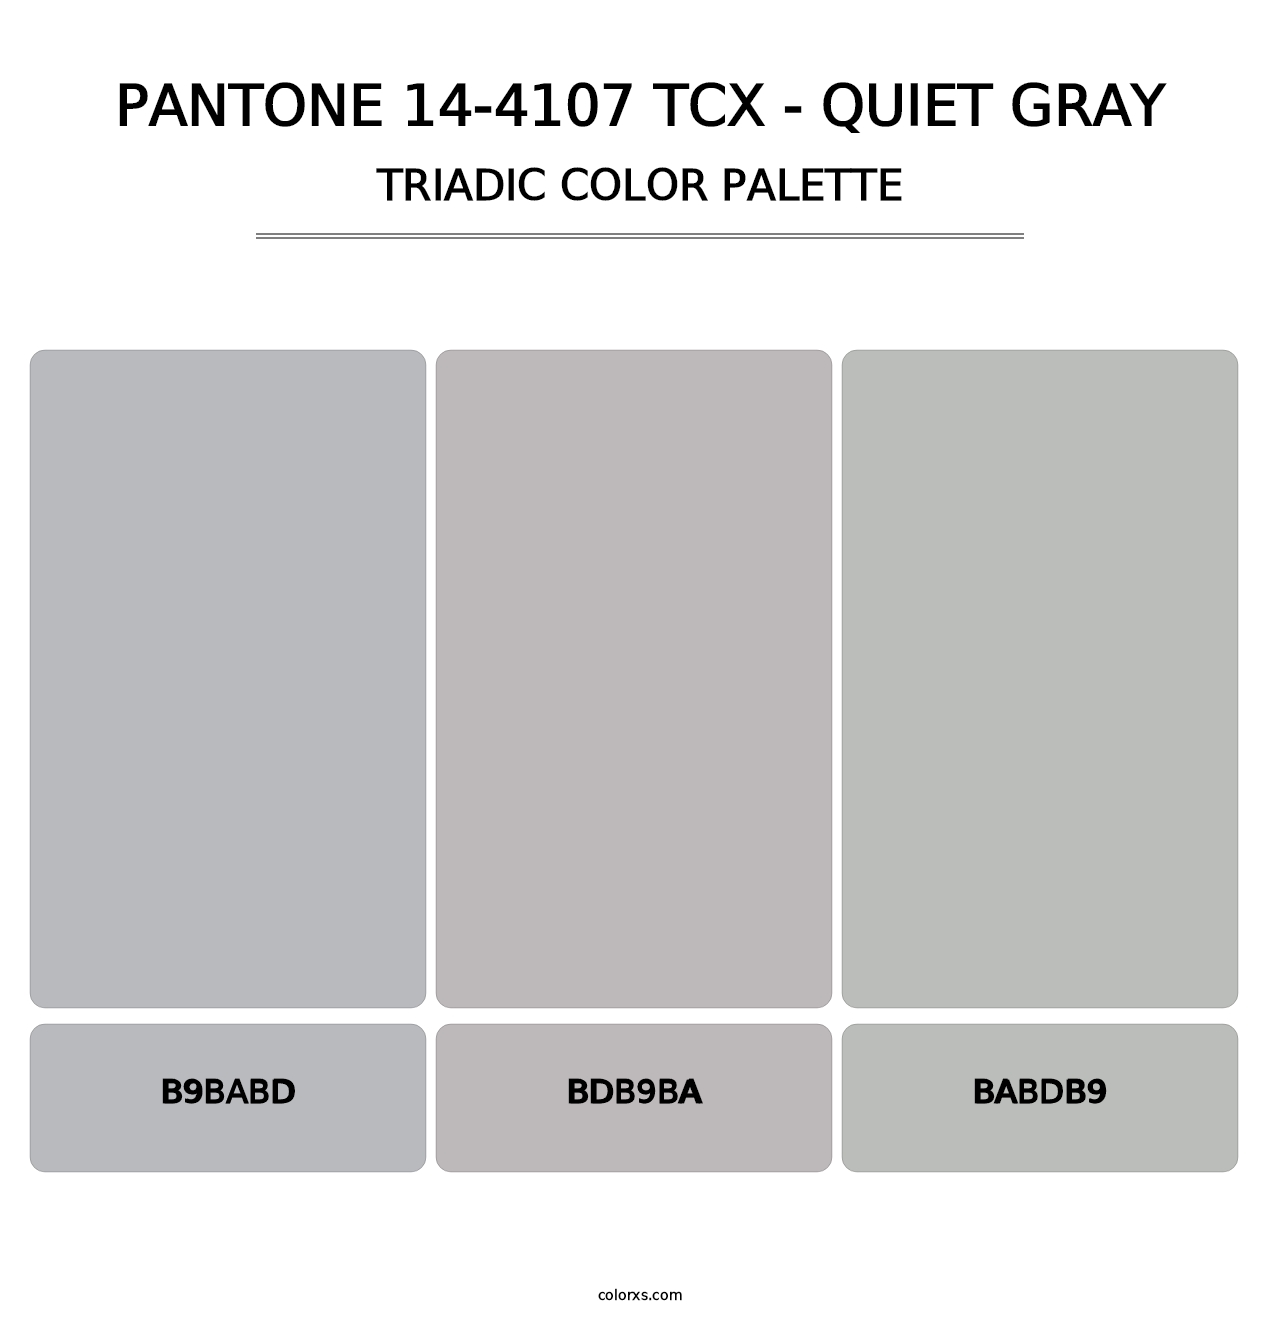 PANTONE 14-4107 TCX - Quiet Gray - Triadic Color Palette